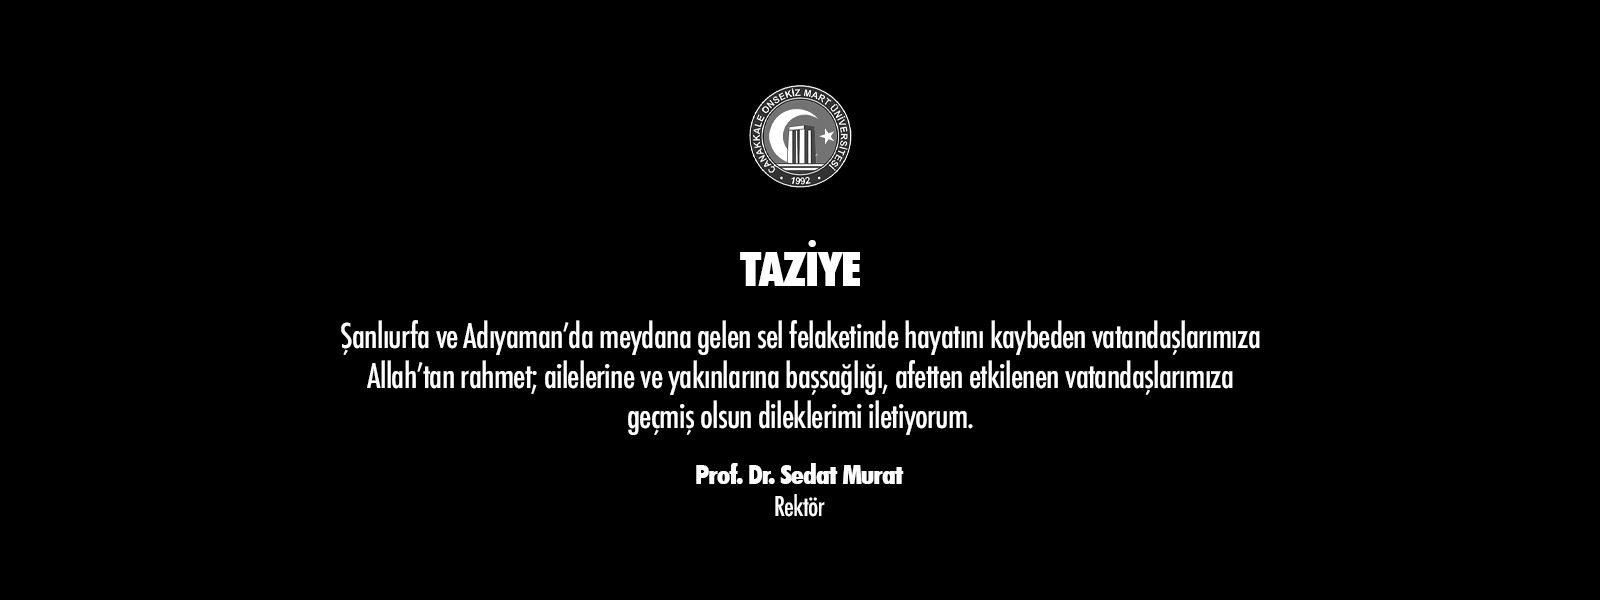 ÇOMÜ Rektörü Prof. Dr. Sedat Murat'ın Taziye Mesajı